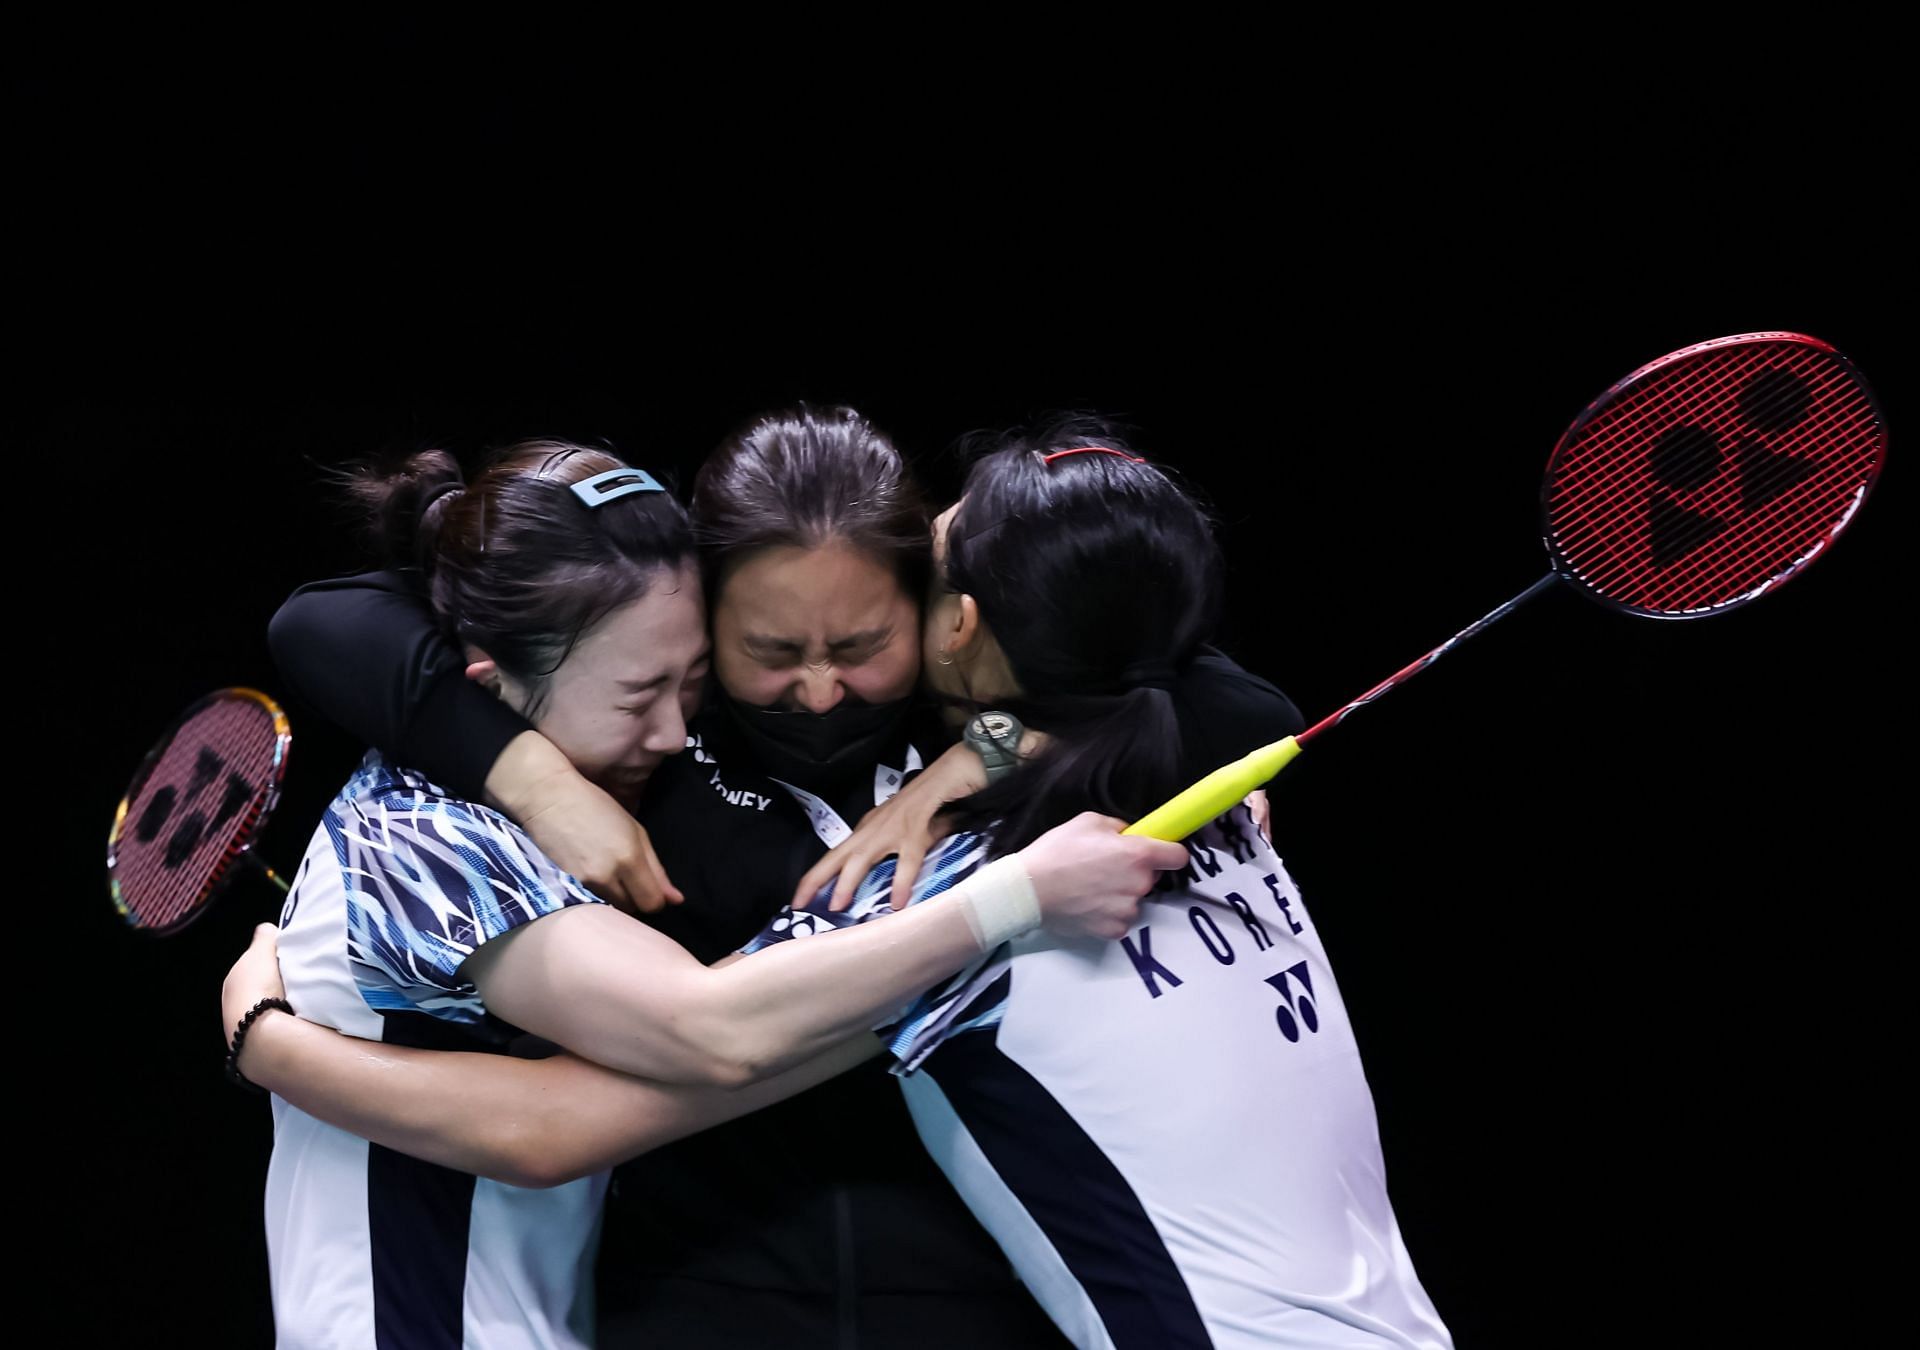 कोरियाई टीम ने दोनों डबल्स मुकाबले जीतकर चीन की बराबरी की।